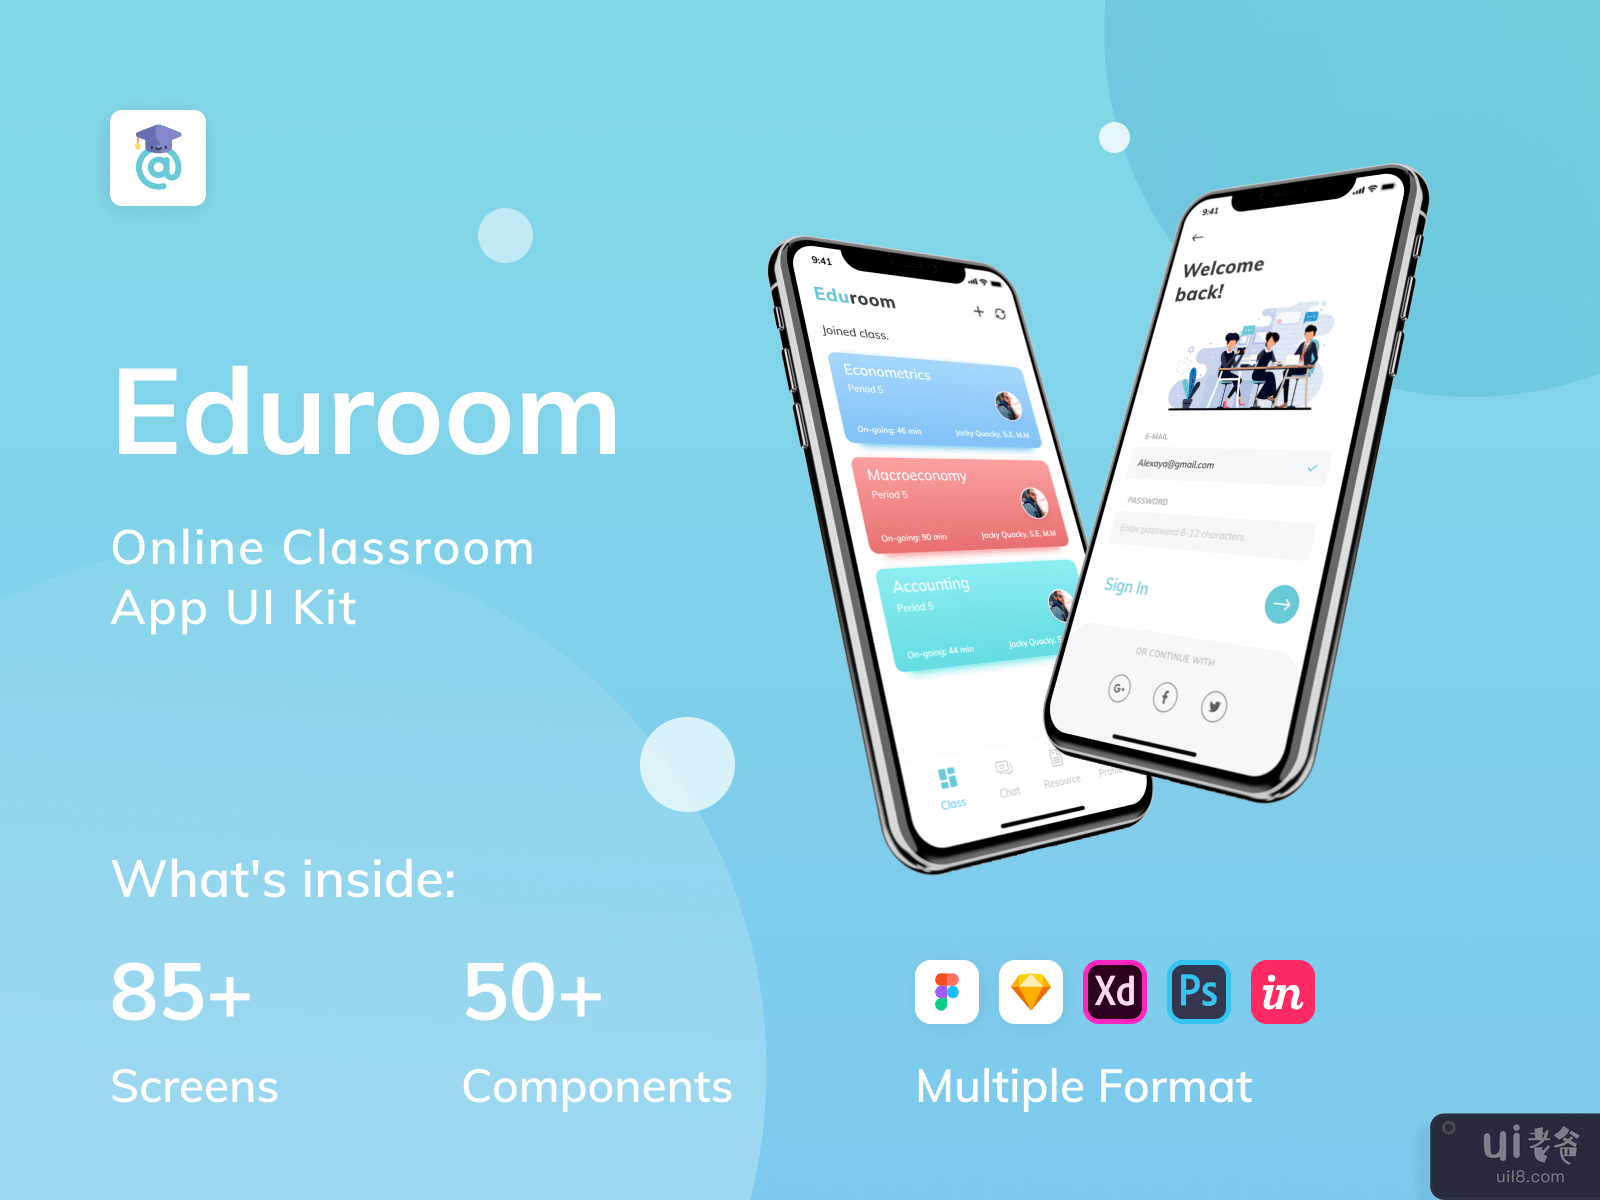 EduRoom - 在线课堂应用程序 UI 工具包（第 2 部分）(EduRoom - Online Class Room App UI Kit (Part 2))插图